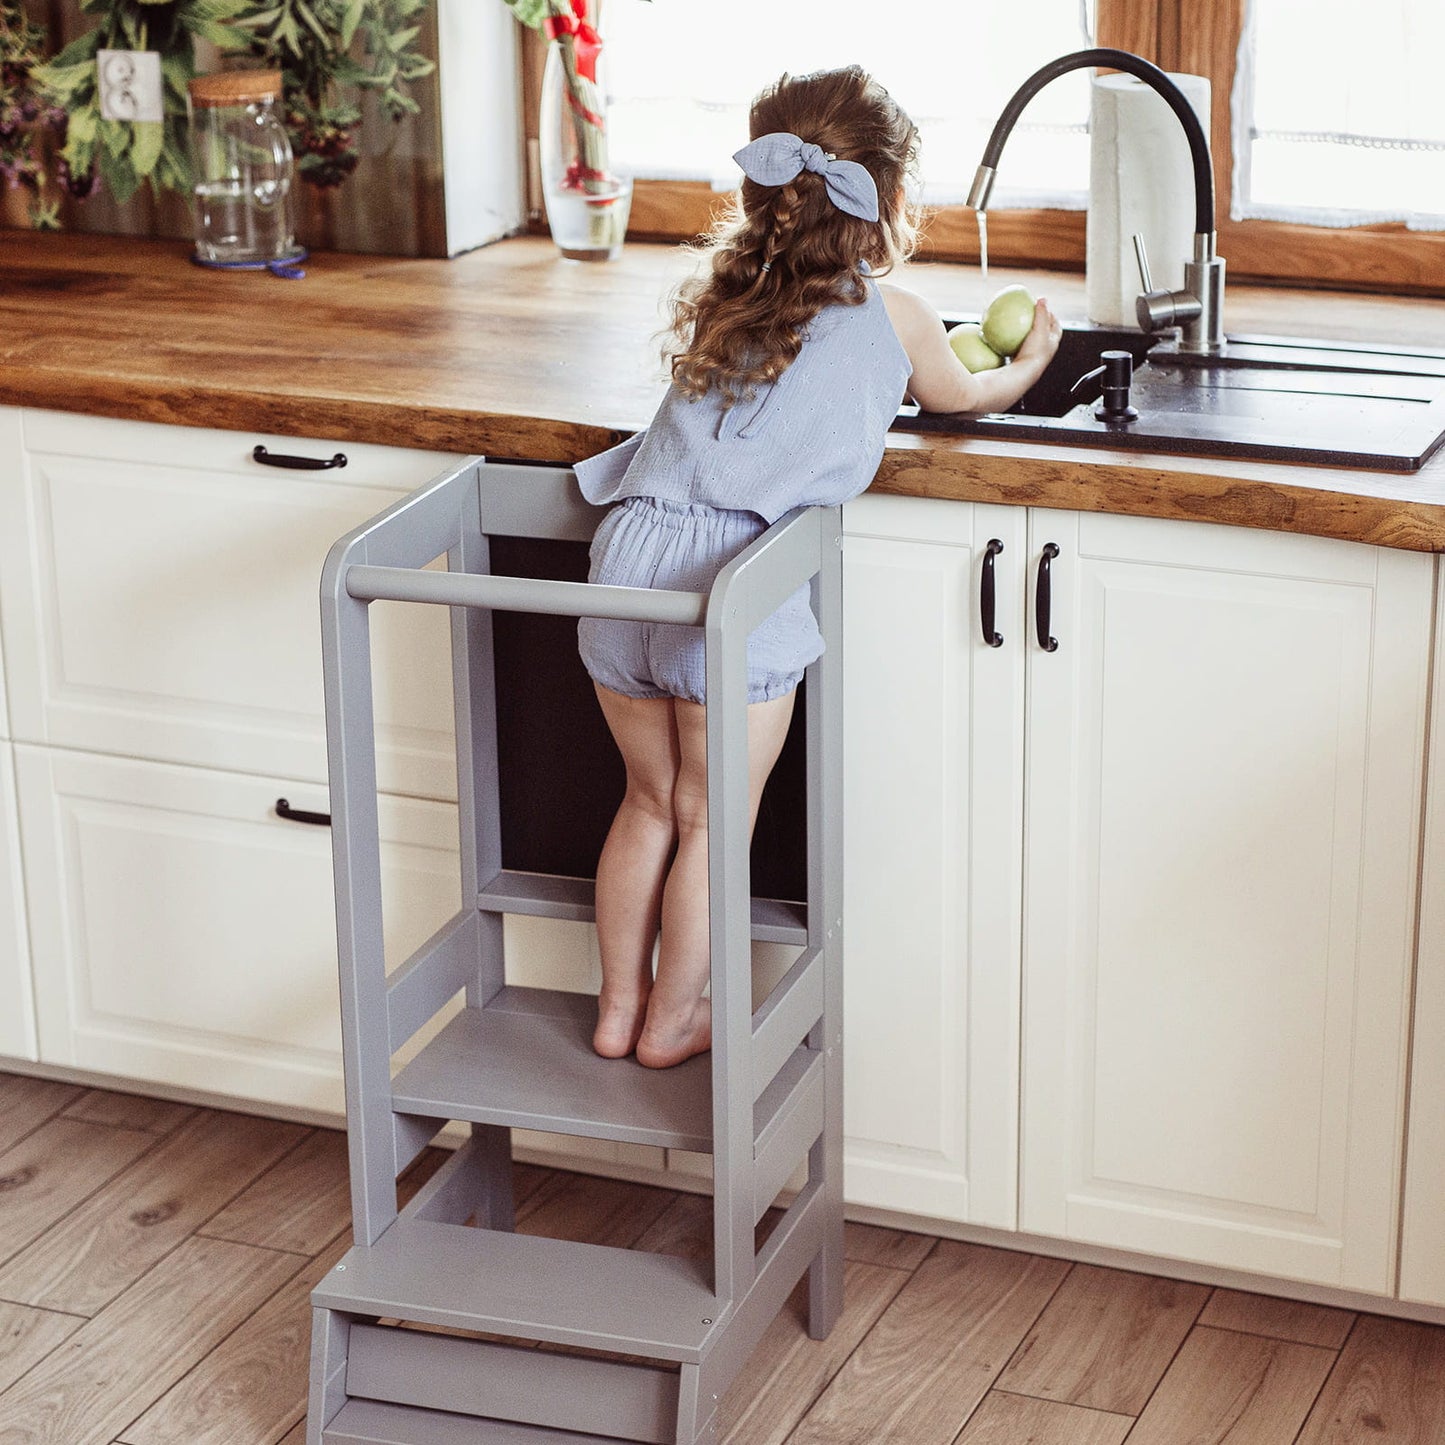 MeowBaby® Kitchen Helper z Tablicą Drewniany Pomocnik Kuchenny dla Dziecka, Niebieski